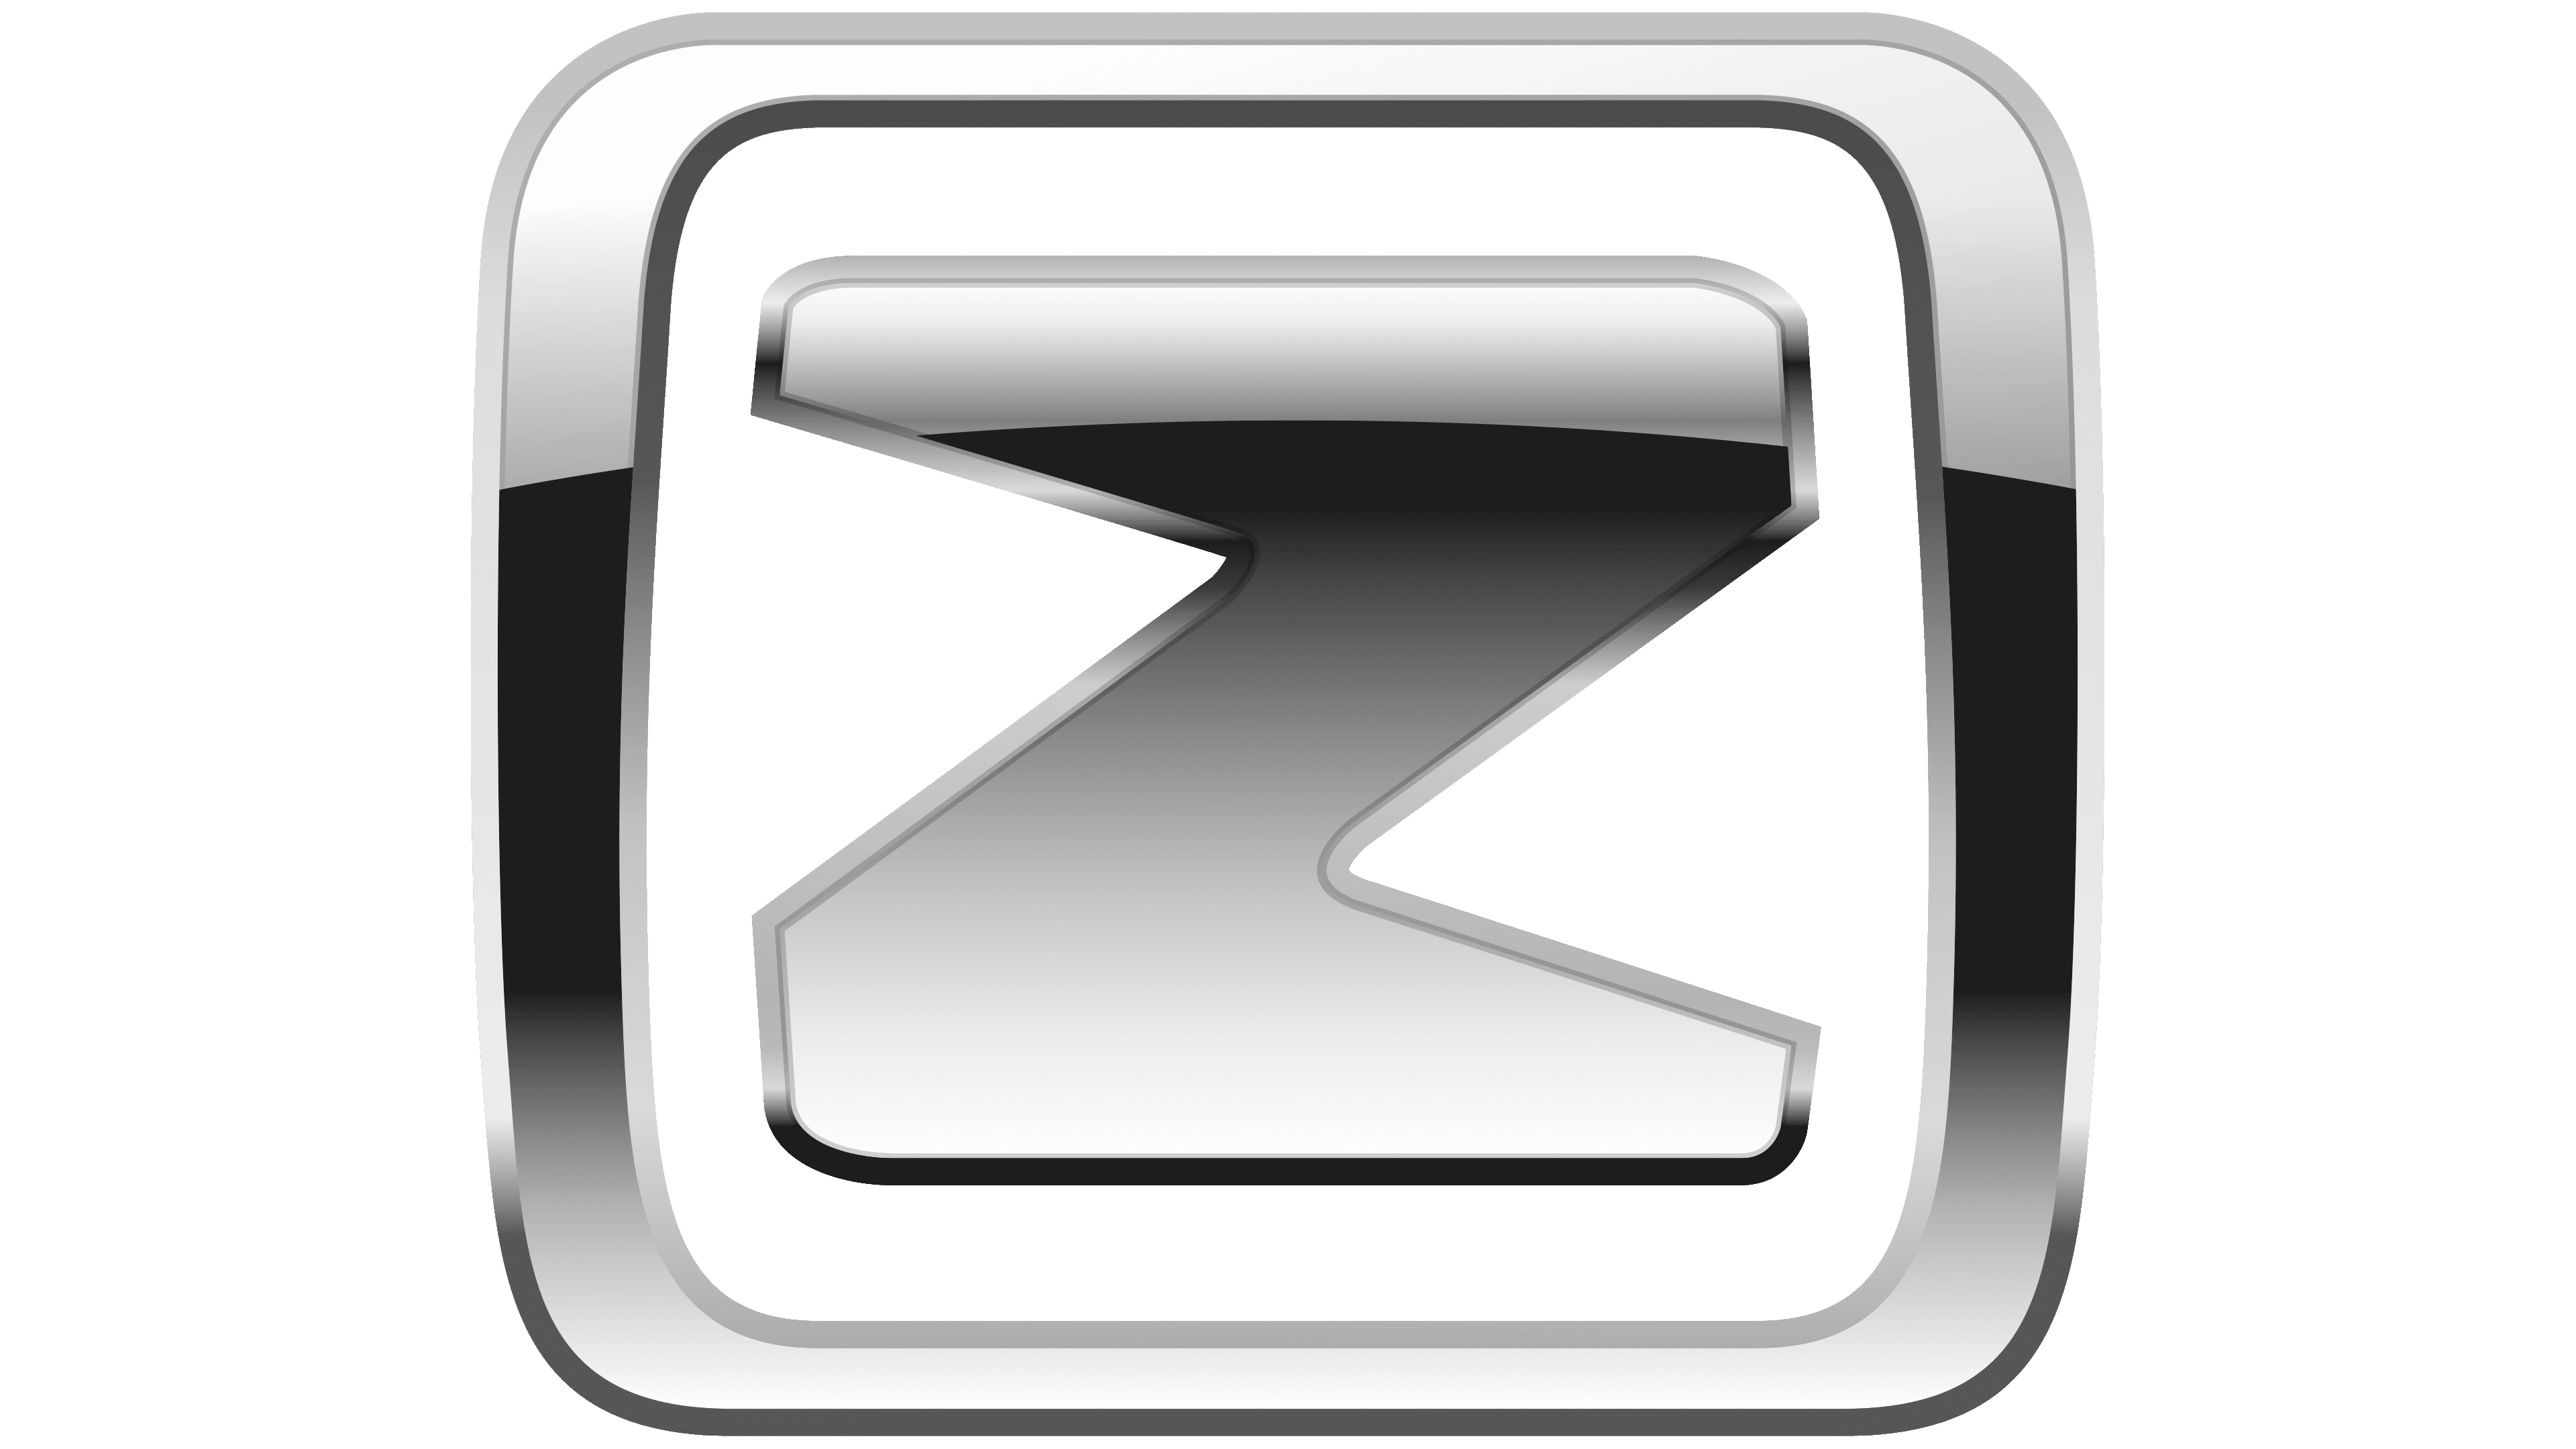 Zotye Logo